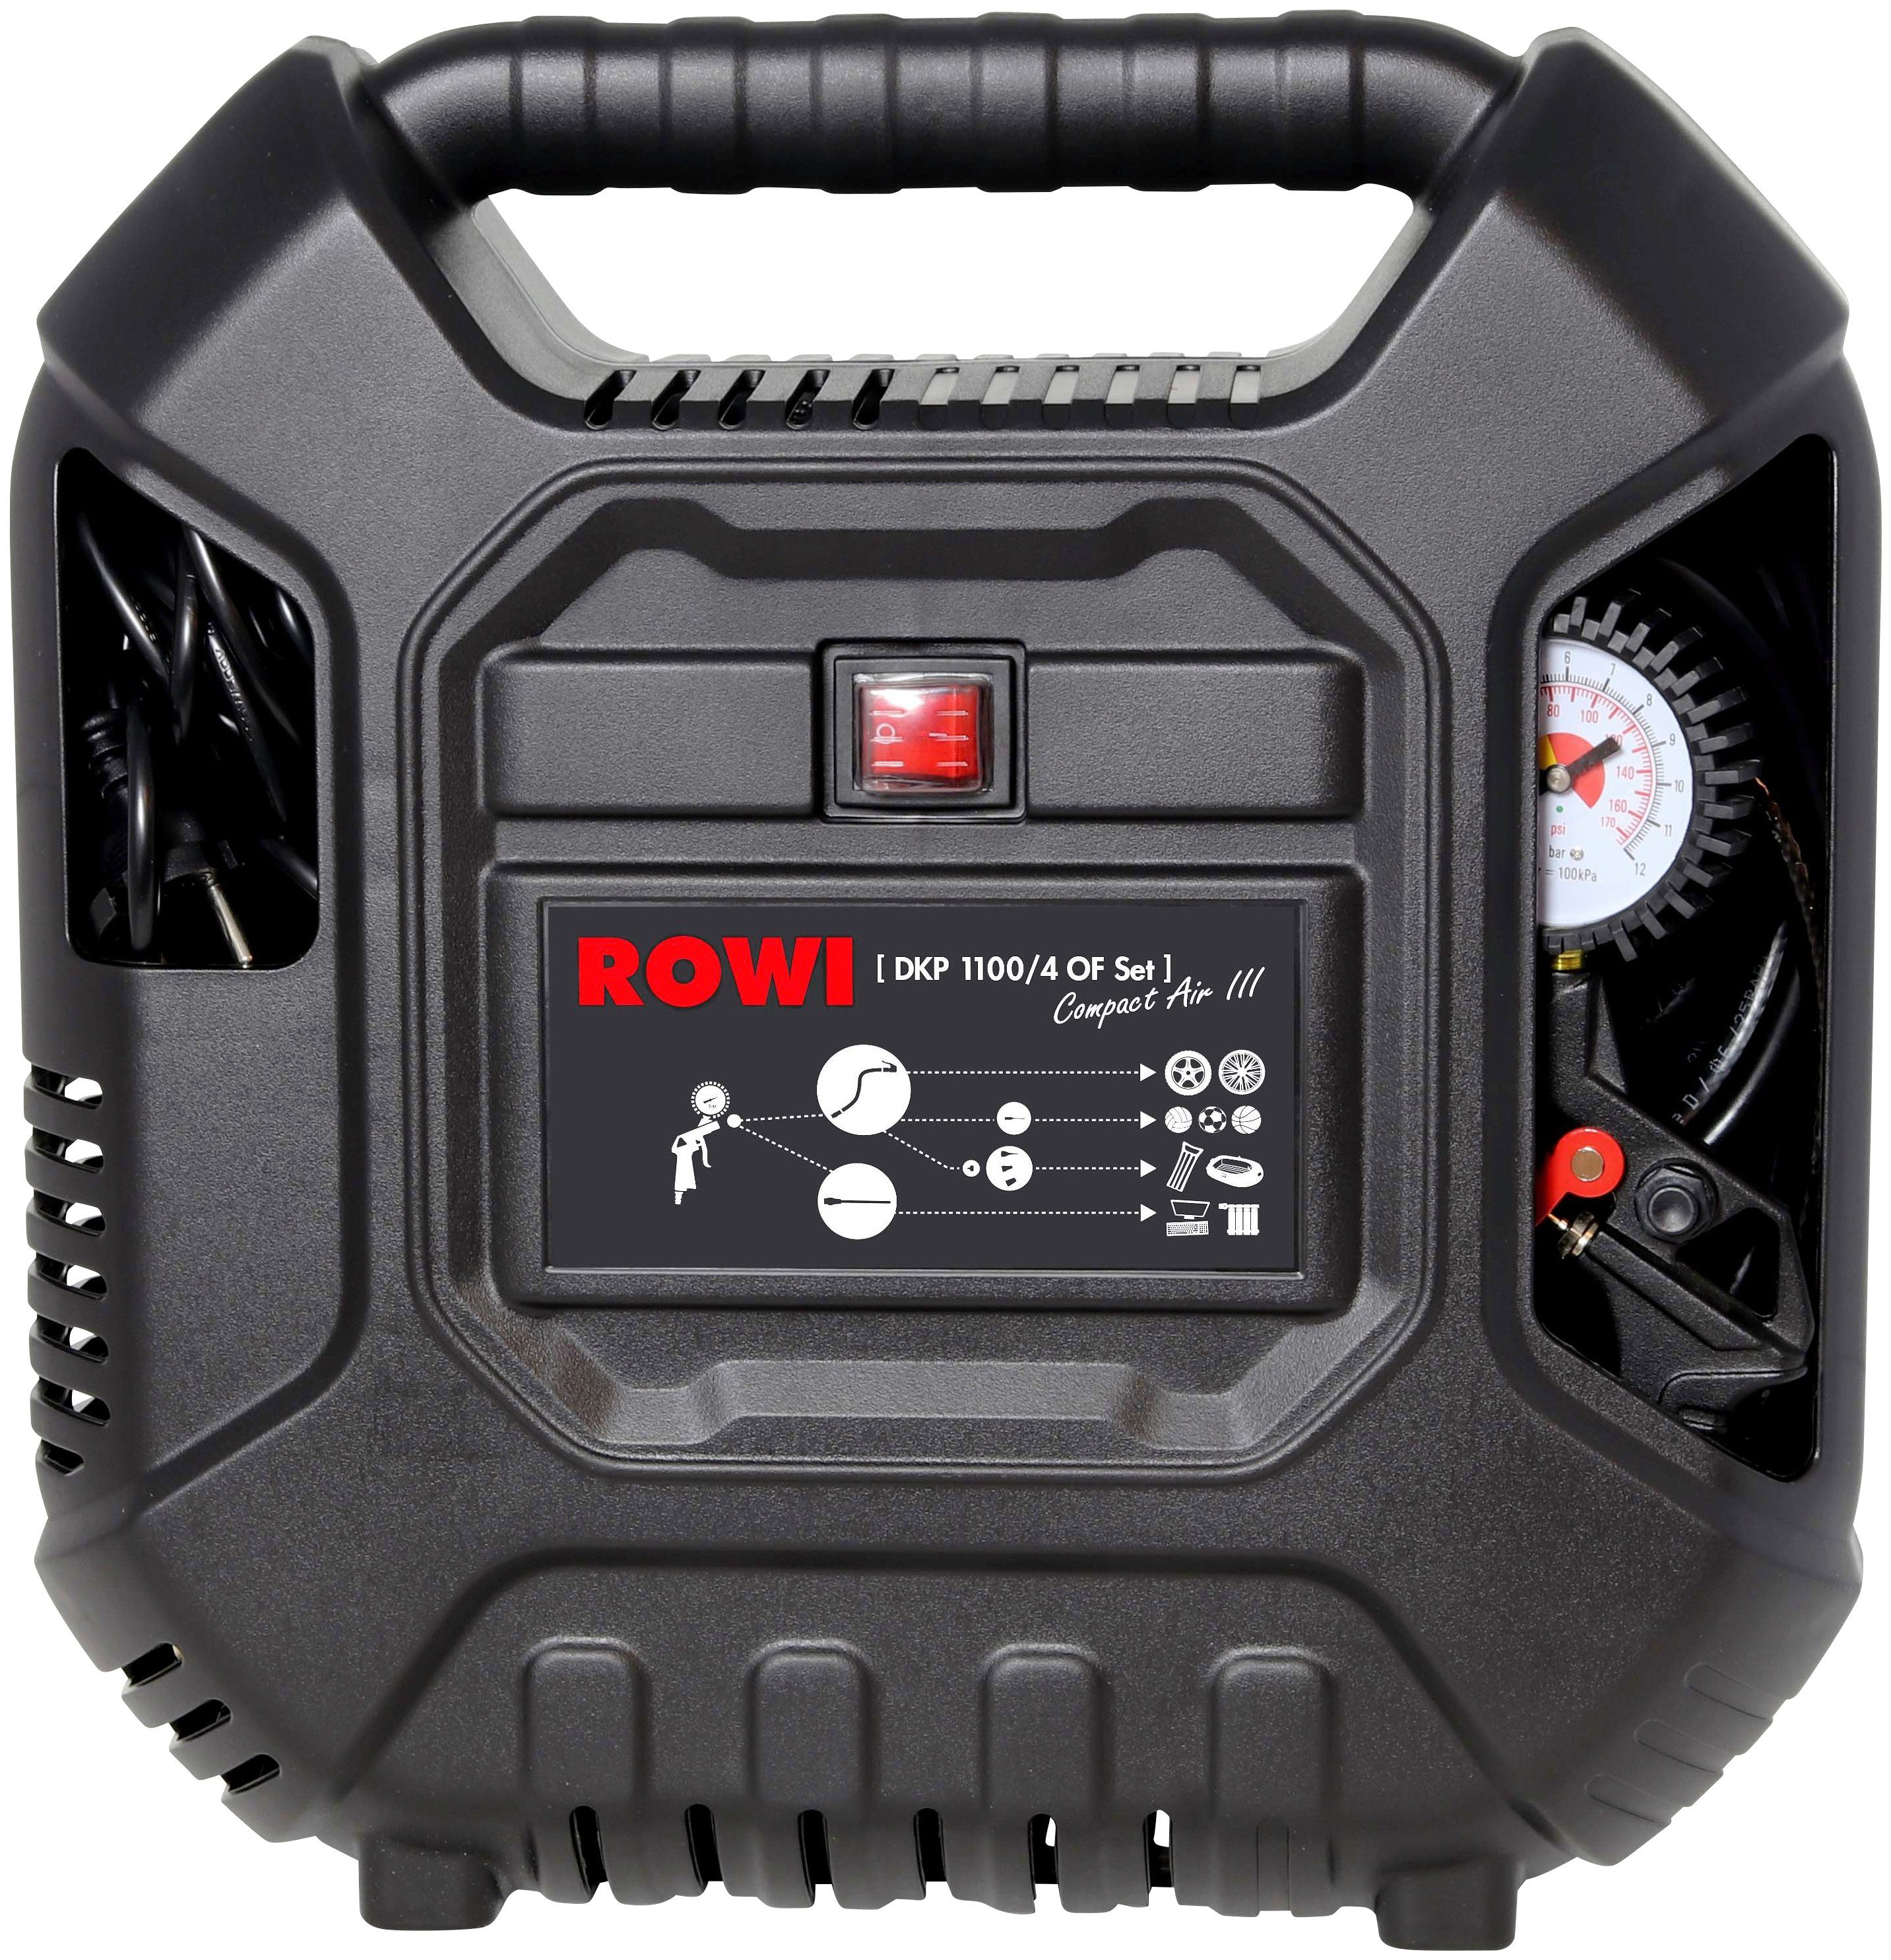 OF ROWI Air Kompressor III, 1100/4 Set, 9-tlg. Compact DKP